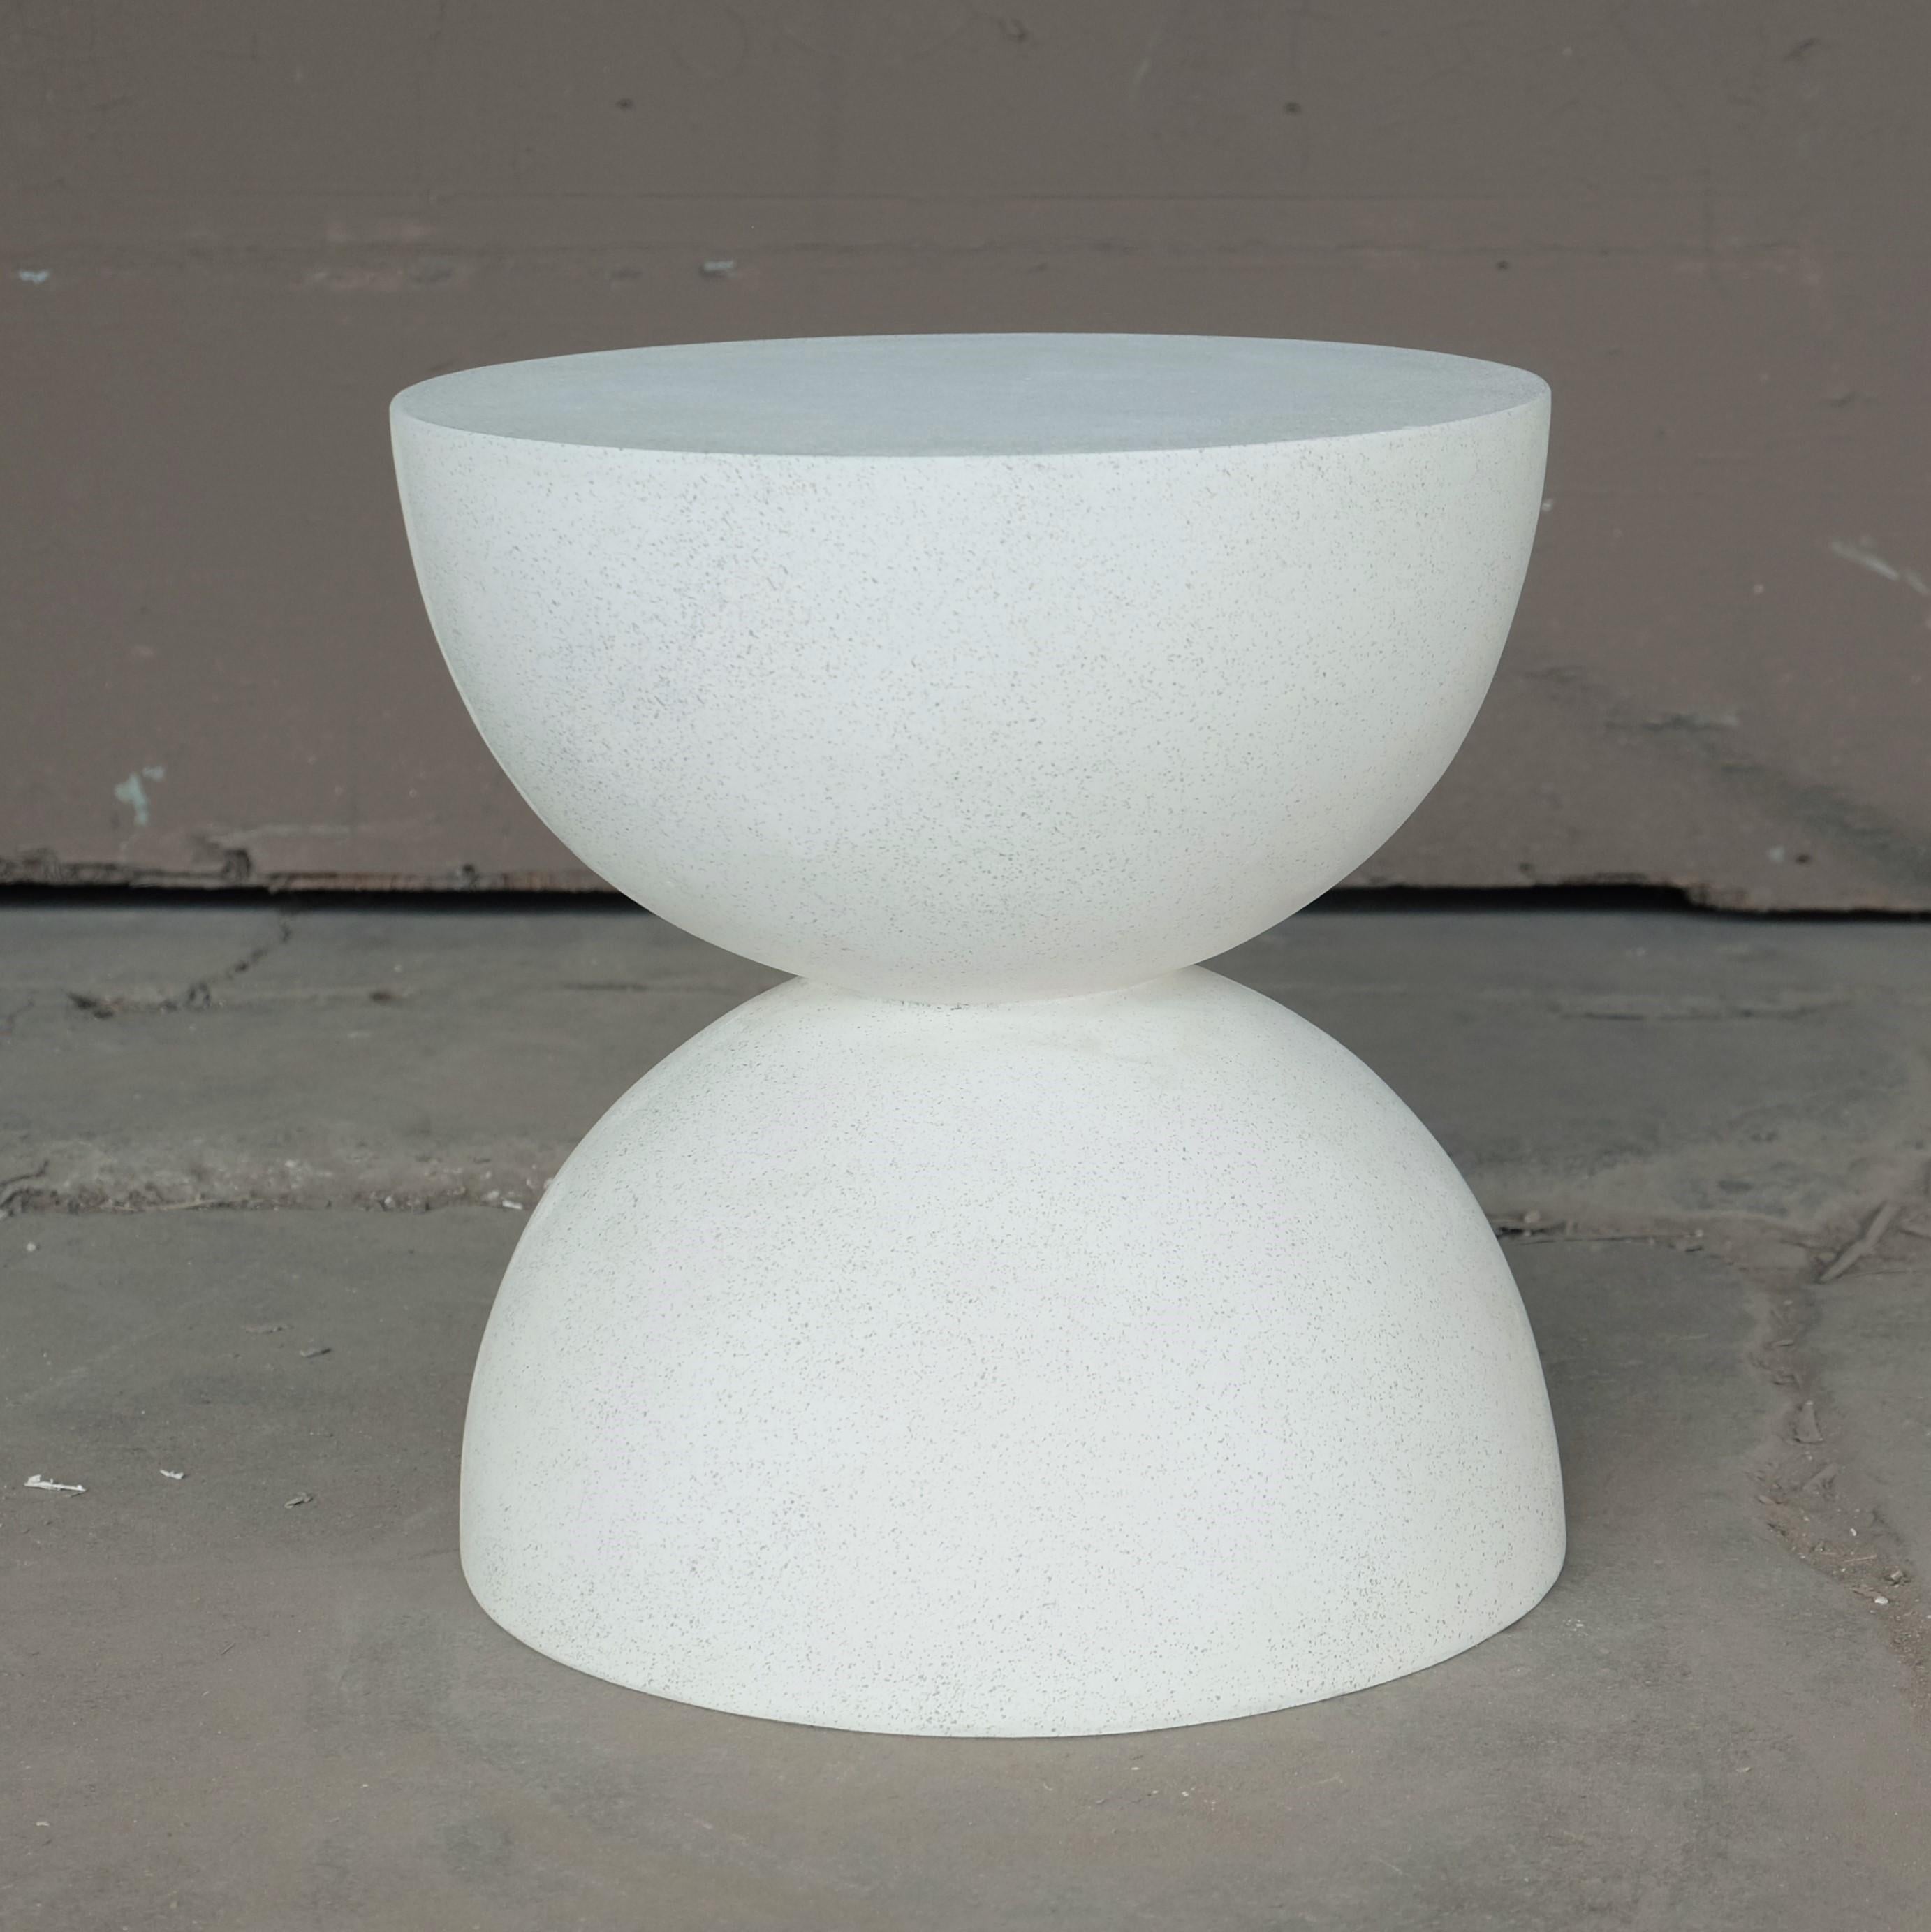 Ein symmetrisches skulpturales Gleichgewicht aus Eleganz und Funktion.

Abmessungen: Durchmesser 38 cm (15 Zoll). Höhe 16 Zoll (40,6 cm). Gewicht 9 kg (20 lbs.)

Farboptionen für die Oberfläche:
weißer Stein (abgebildet)
Naturstein
gealterter